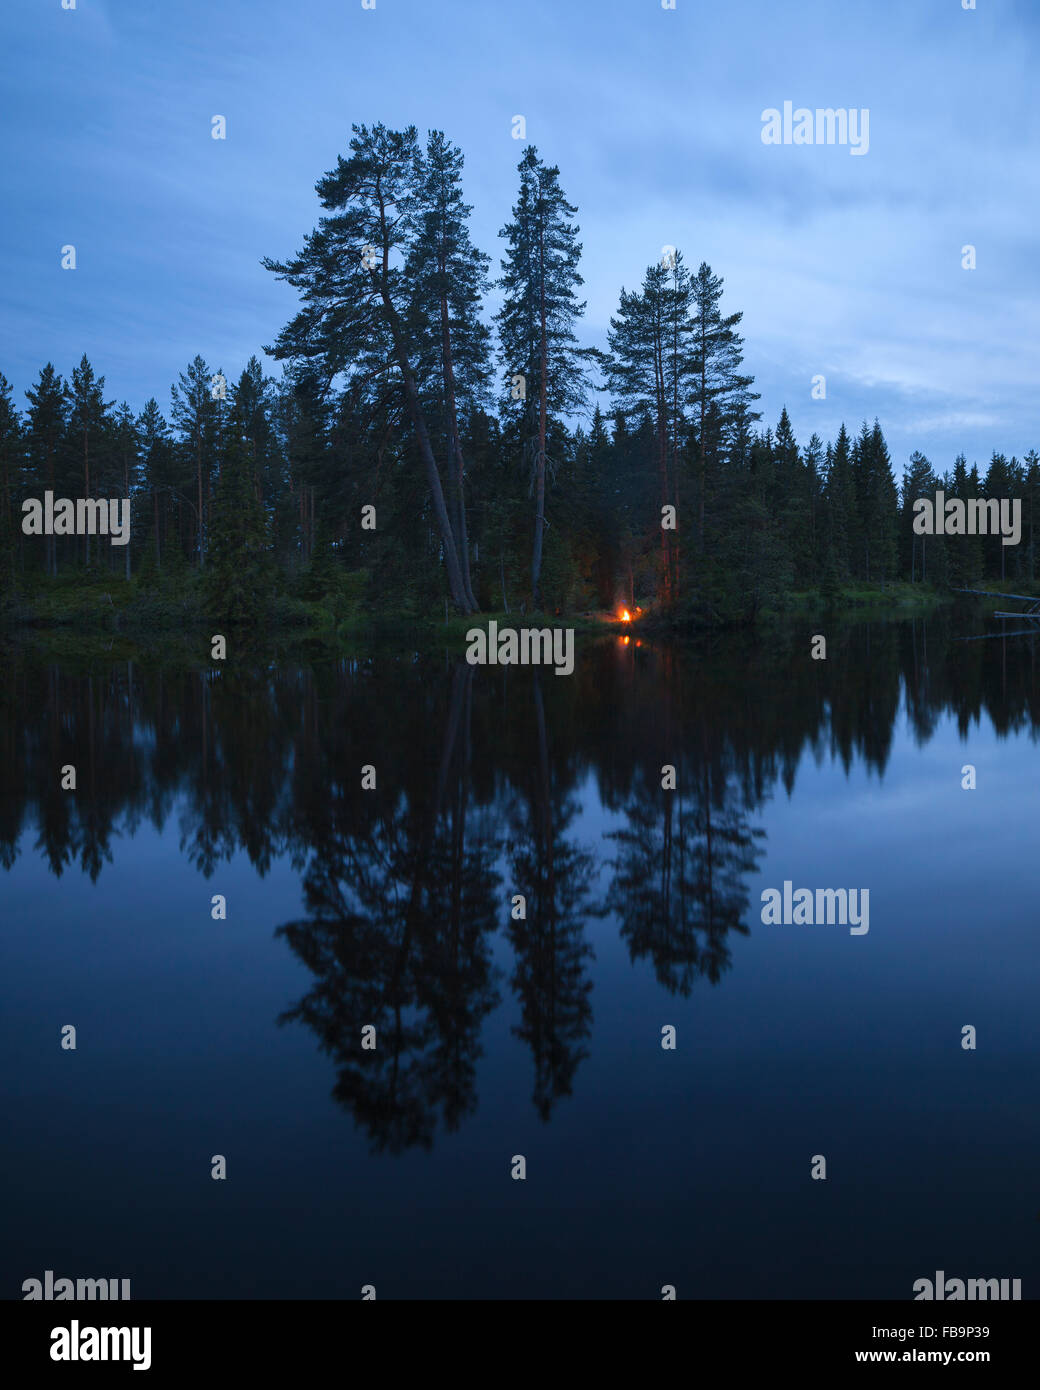 Sweden, Vastmanland, Svartalven, Tranquil lake at dusk Stock Photo